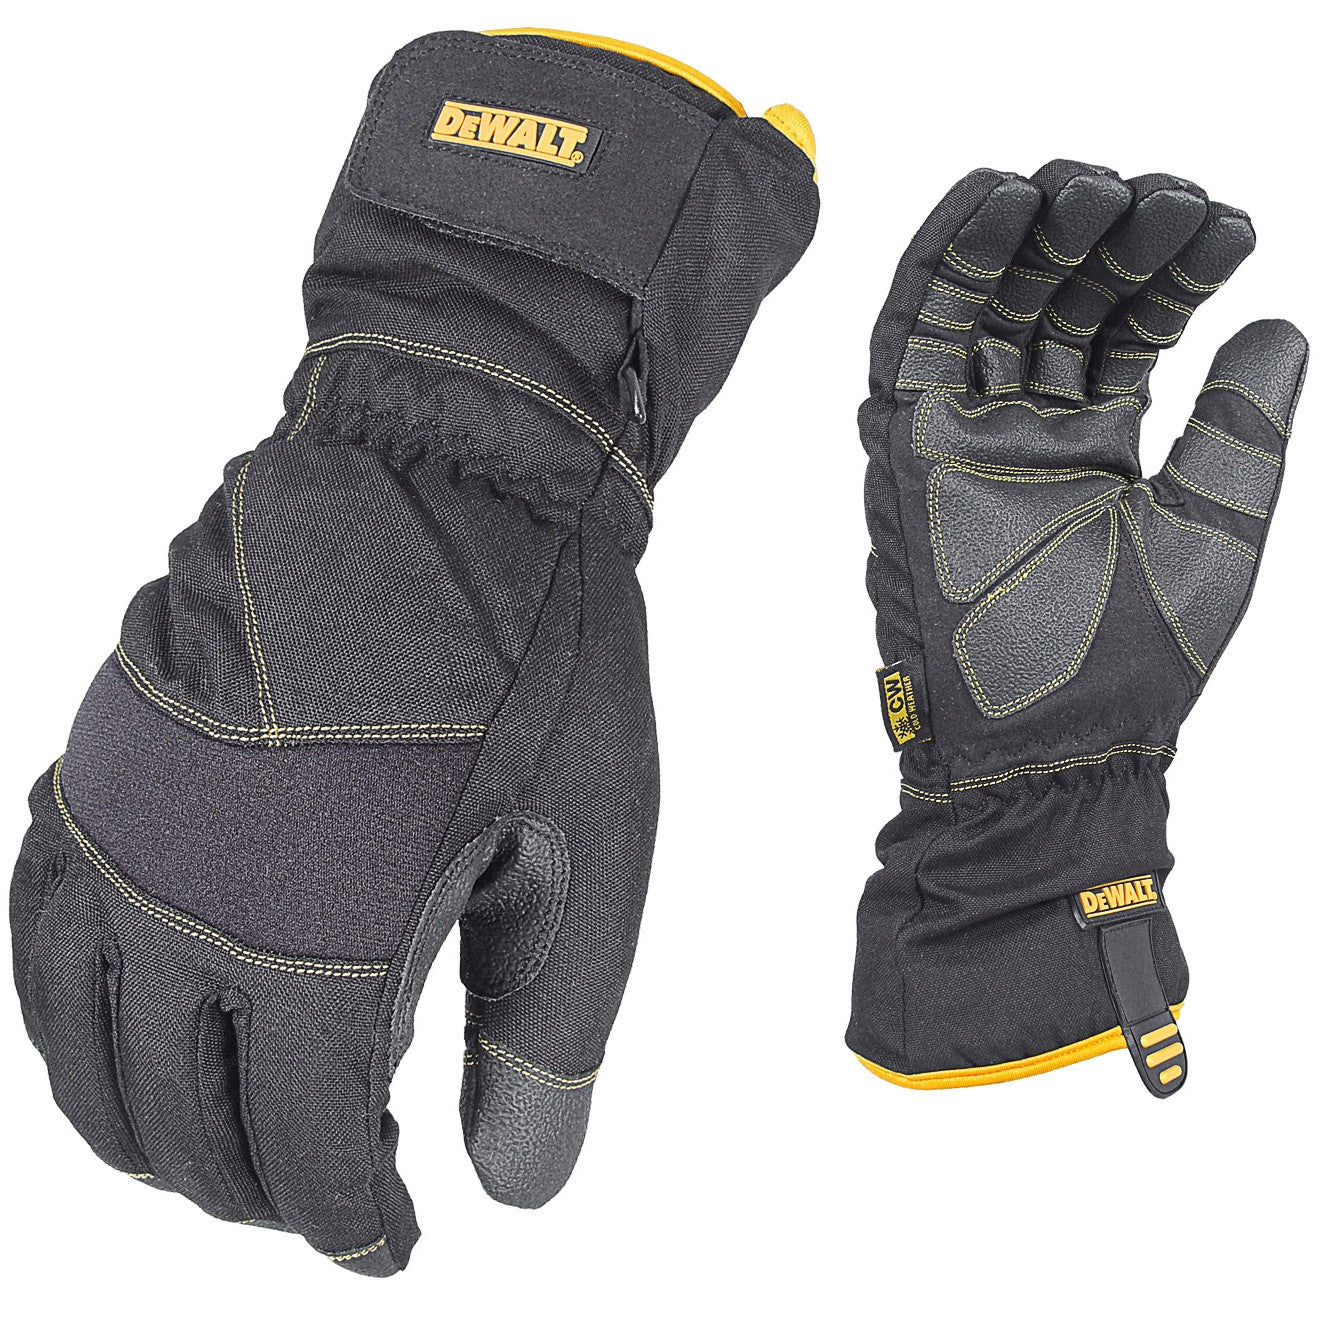 DEWALT DPG750 100g Insulated Extreme Condition Cold Weather Work Glove